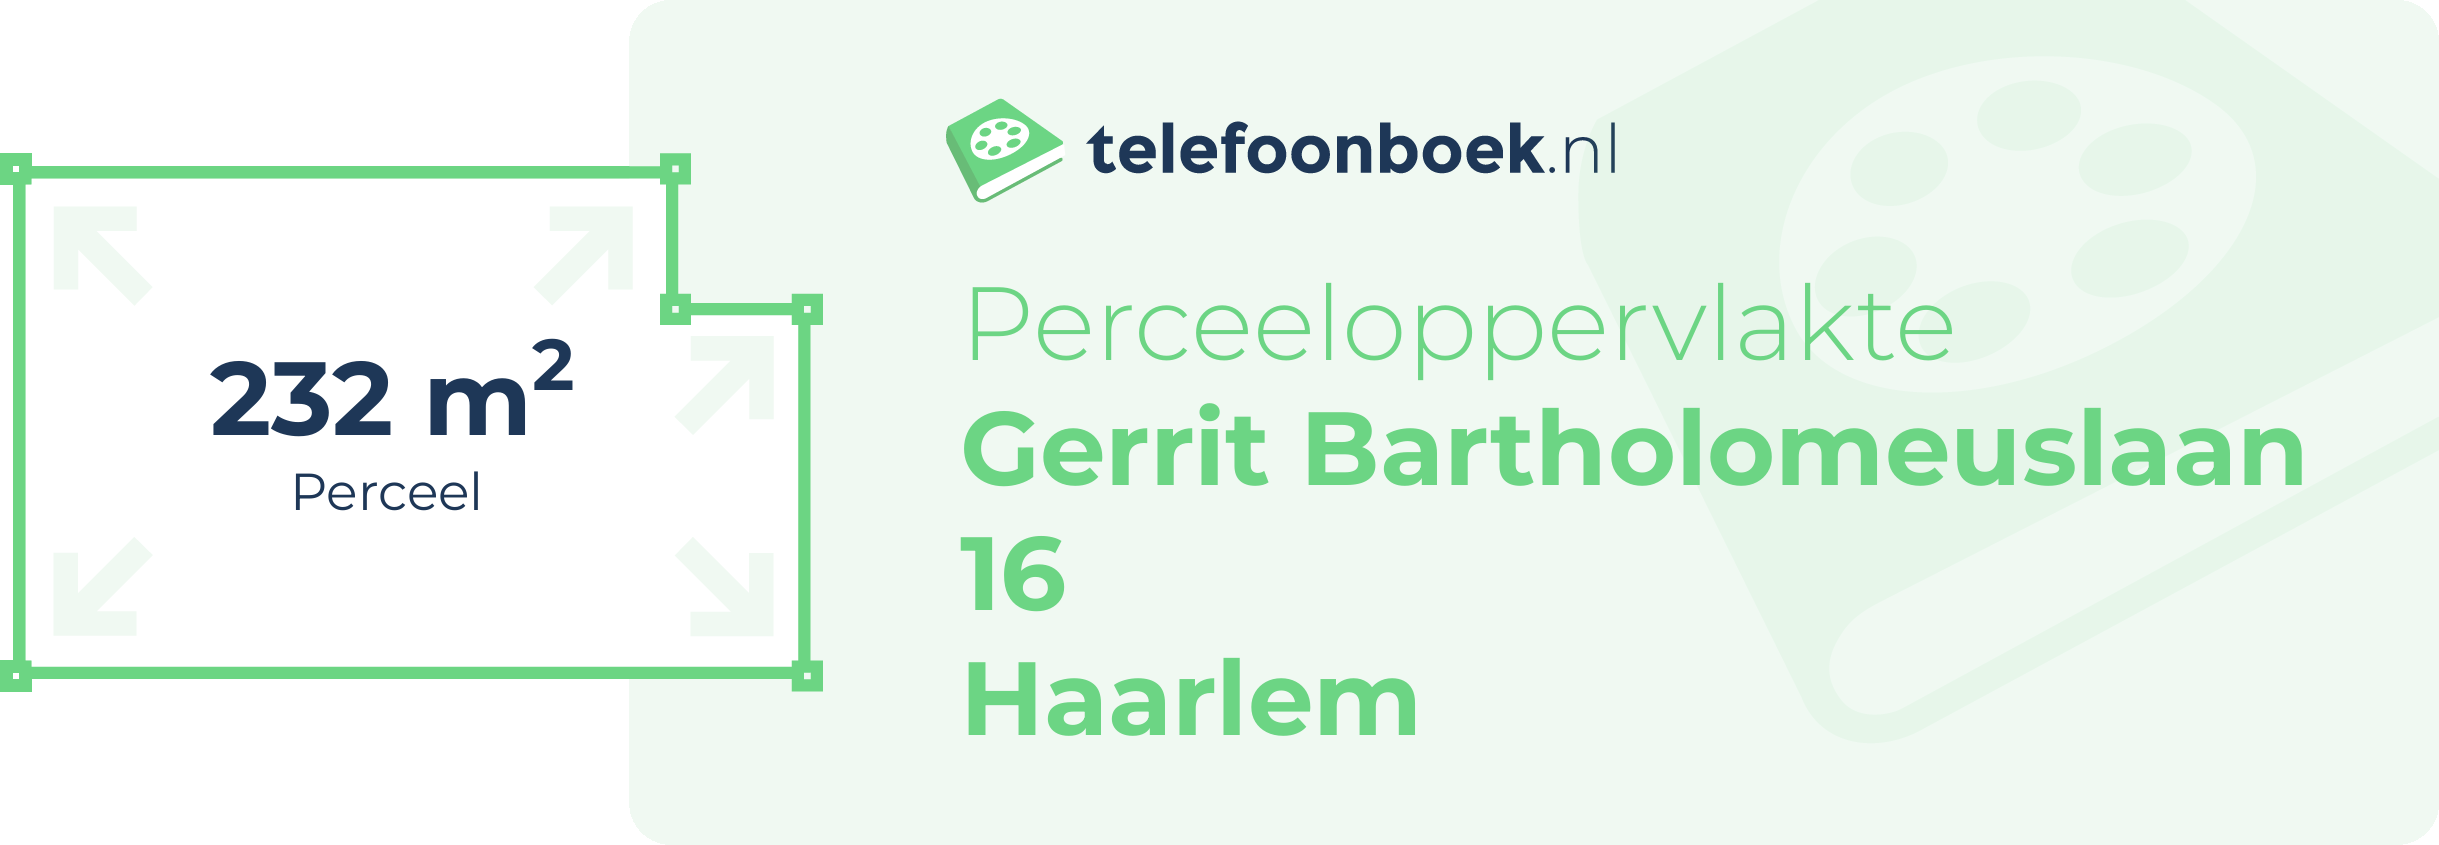 Perceeloppervlakte Gerrit Bartholomeuslaan 16 Haarlem